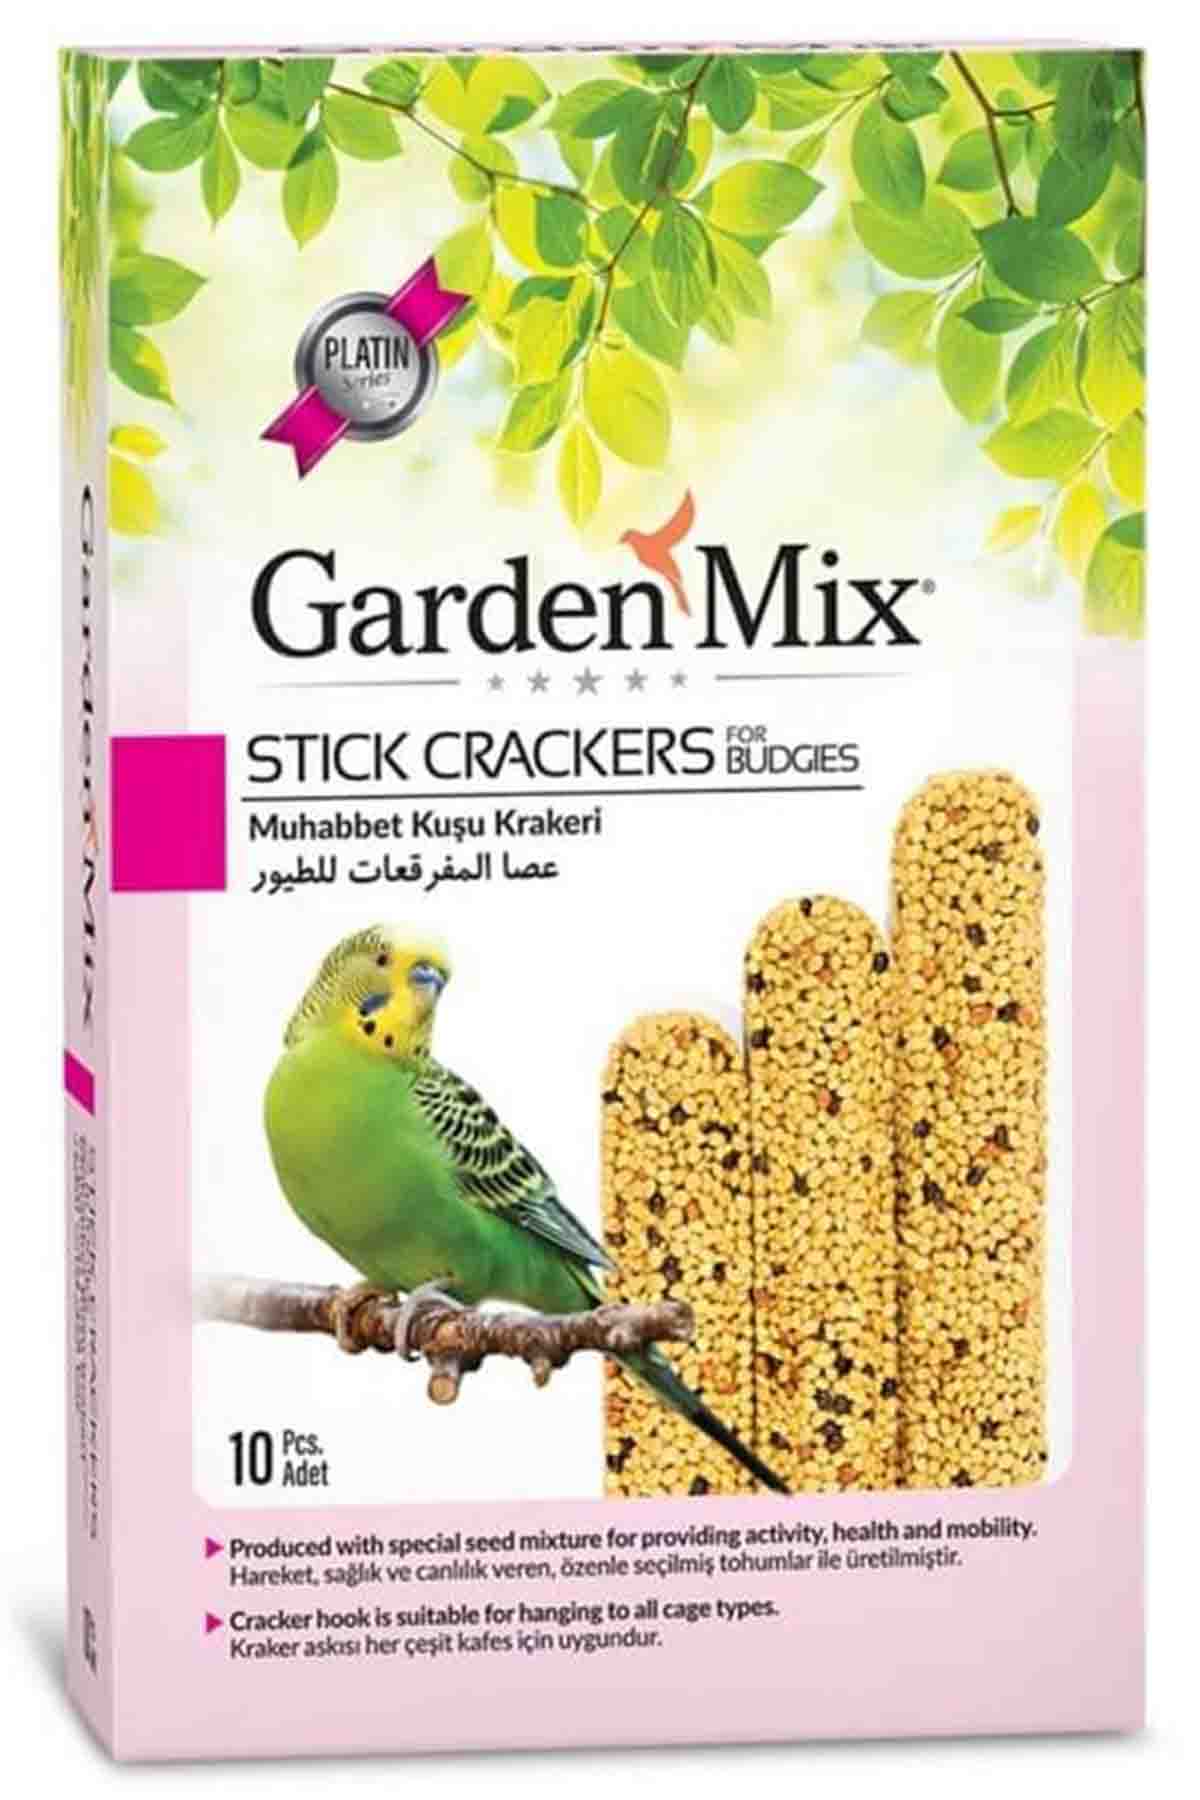 Gardenmix Platin Sade Kuş Krakeri 10lu